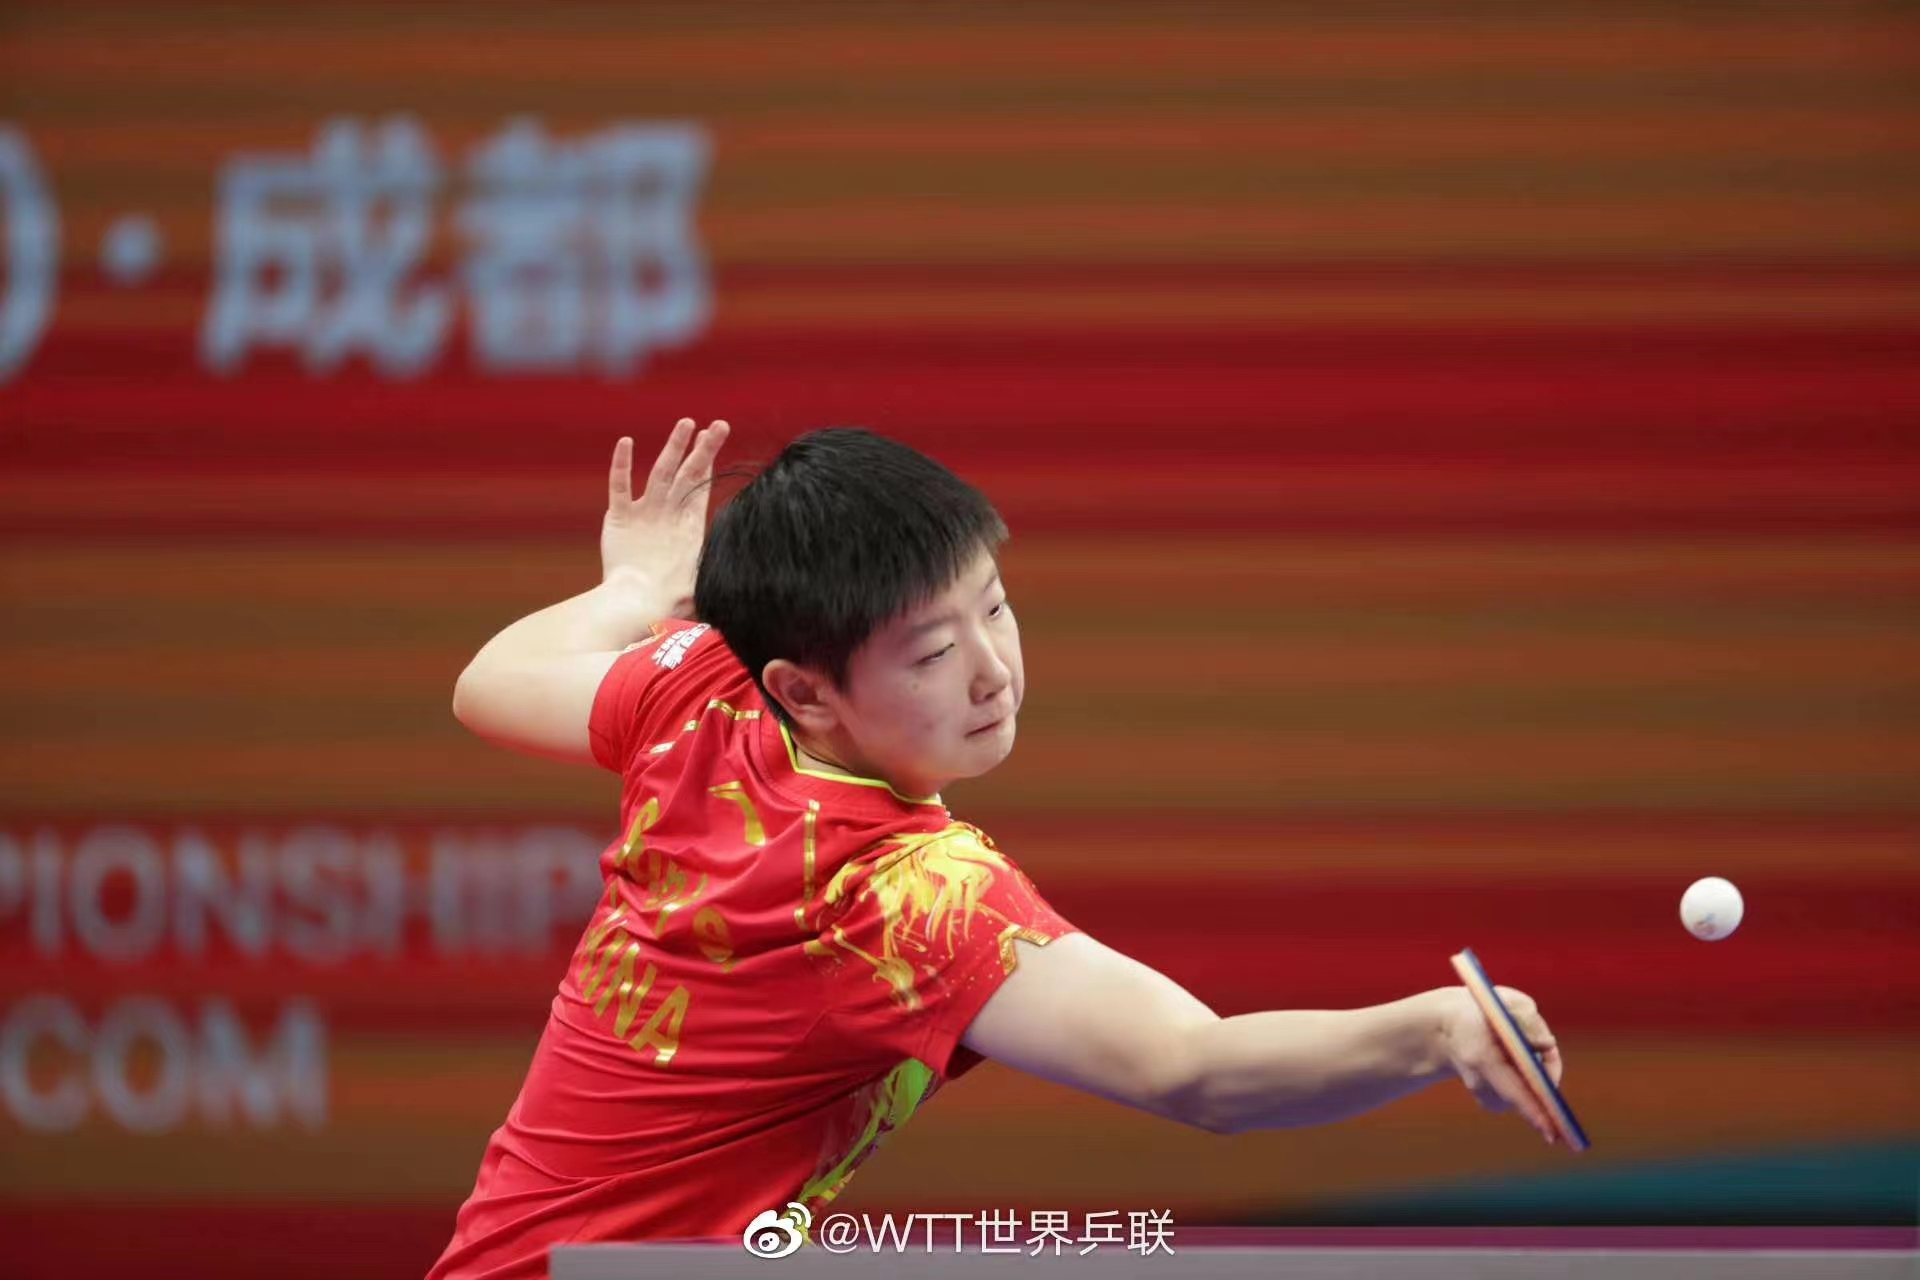 国乒公布成都世乒赛名单选拔办法，9月11日将公布参赛名单 - 哔哩哔哩